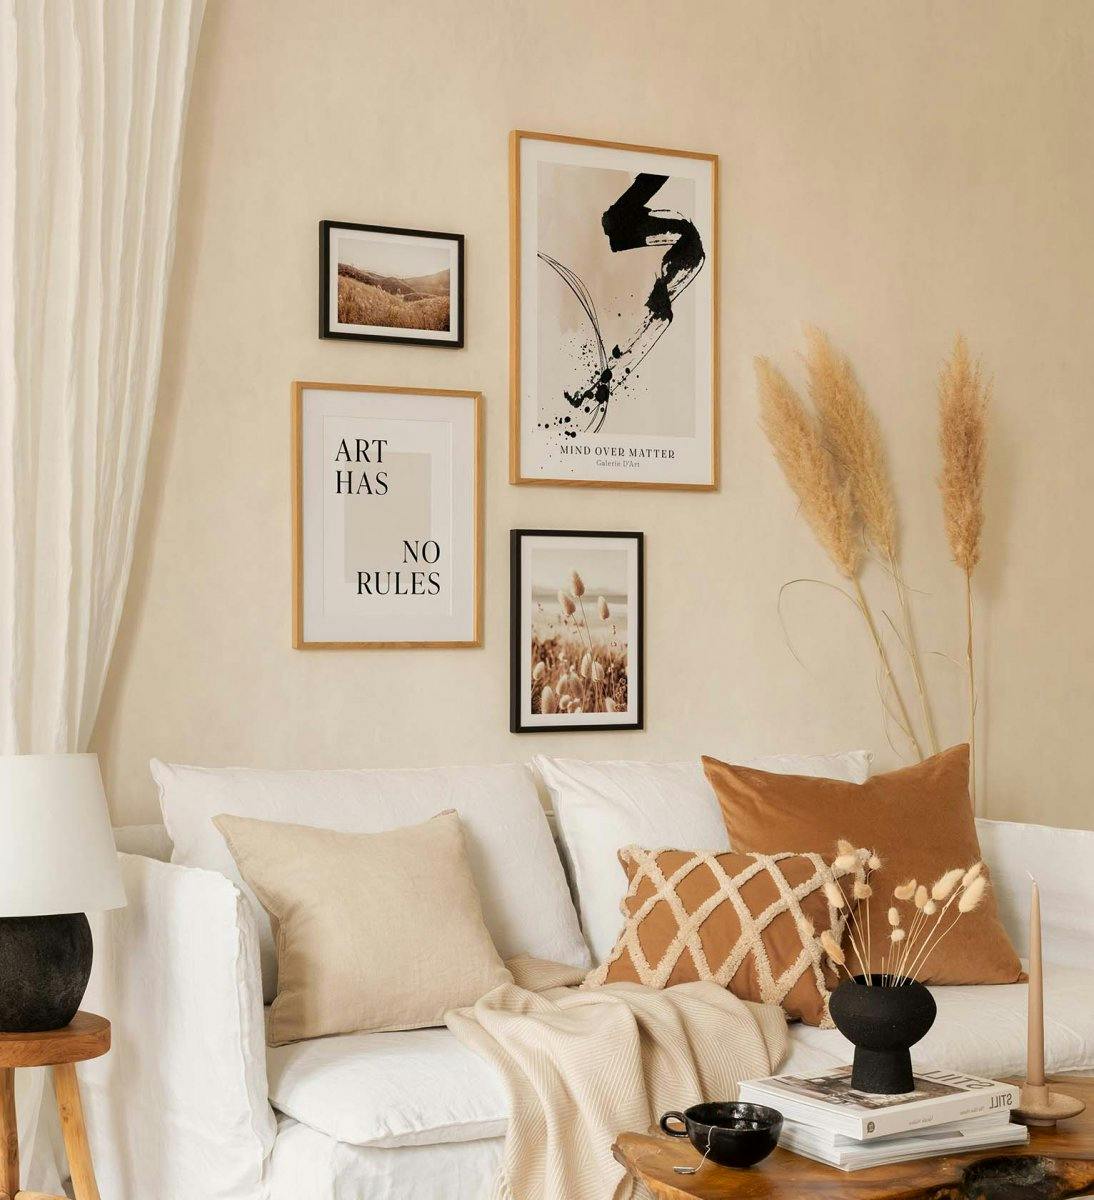 Een trendy fotowand van foto's en typografie gecombineerd in serene kleuren voor de woonkamer